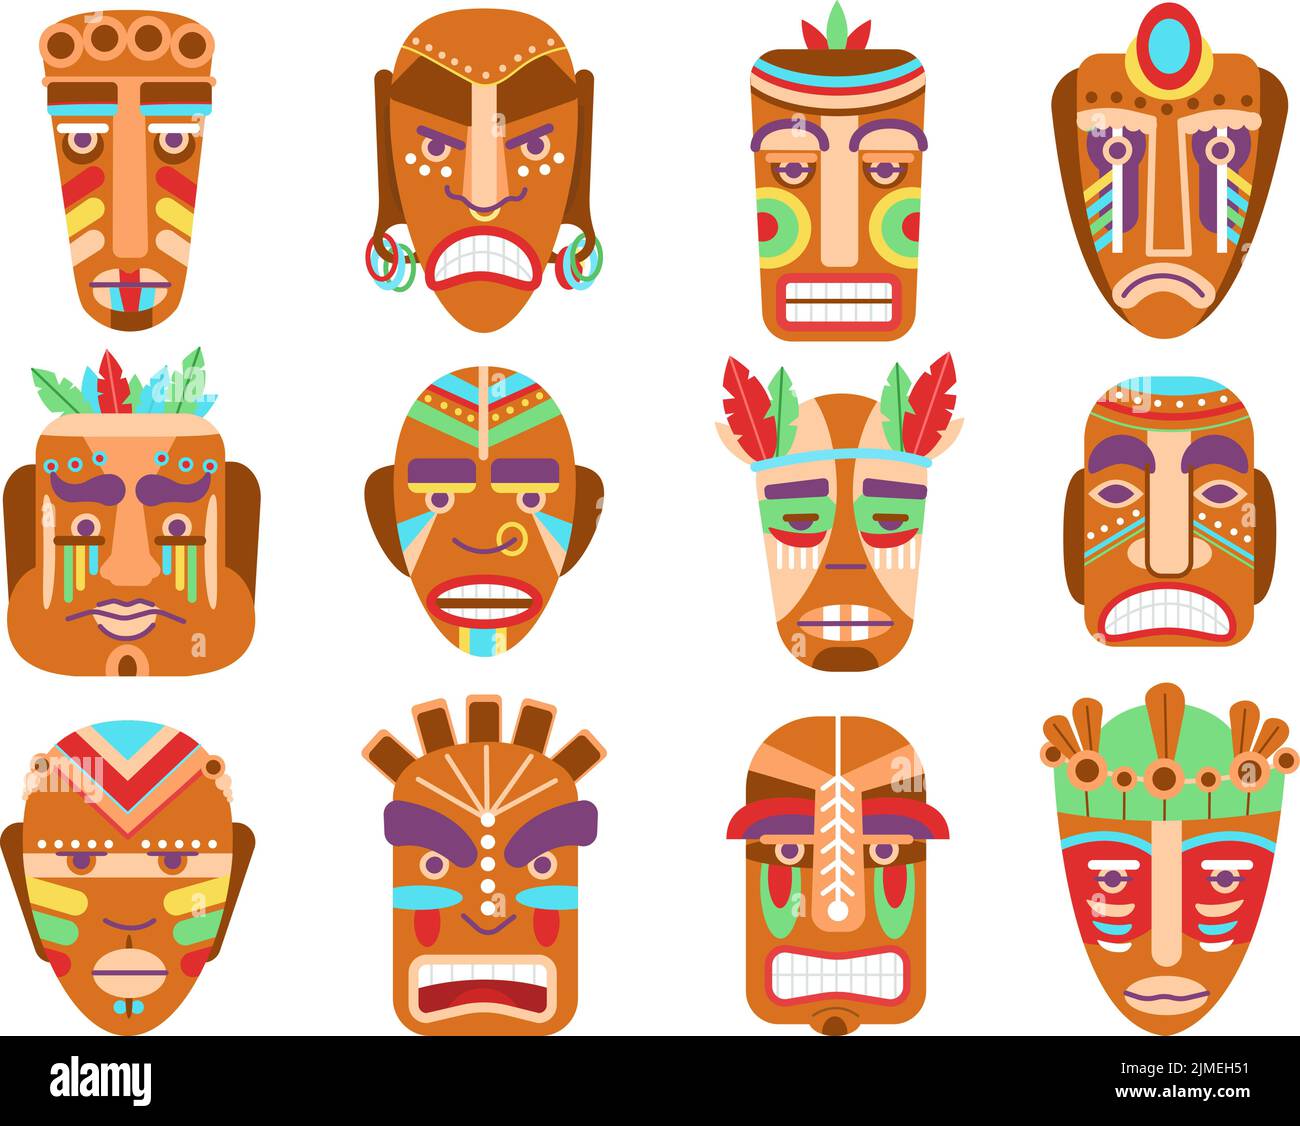 Masques tribaux. Tiki idoles, masque totémique ethnique. Symboles anciens guerriers africains isolés en bois. Caricature traditionnelle de la culture maya éléments vecteur décents Illustration de Vecteur